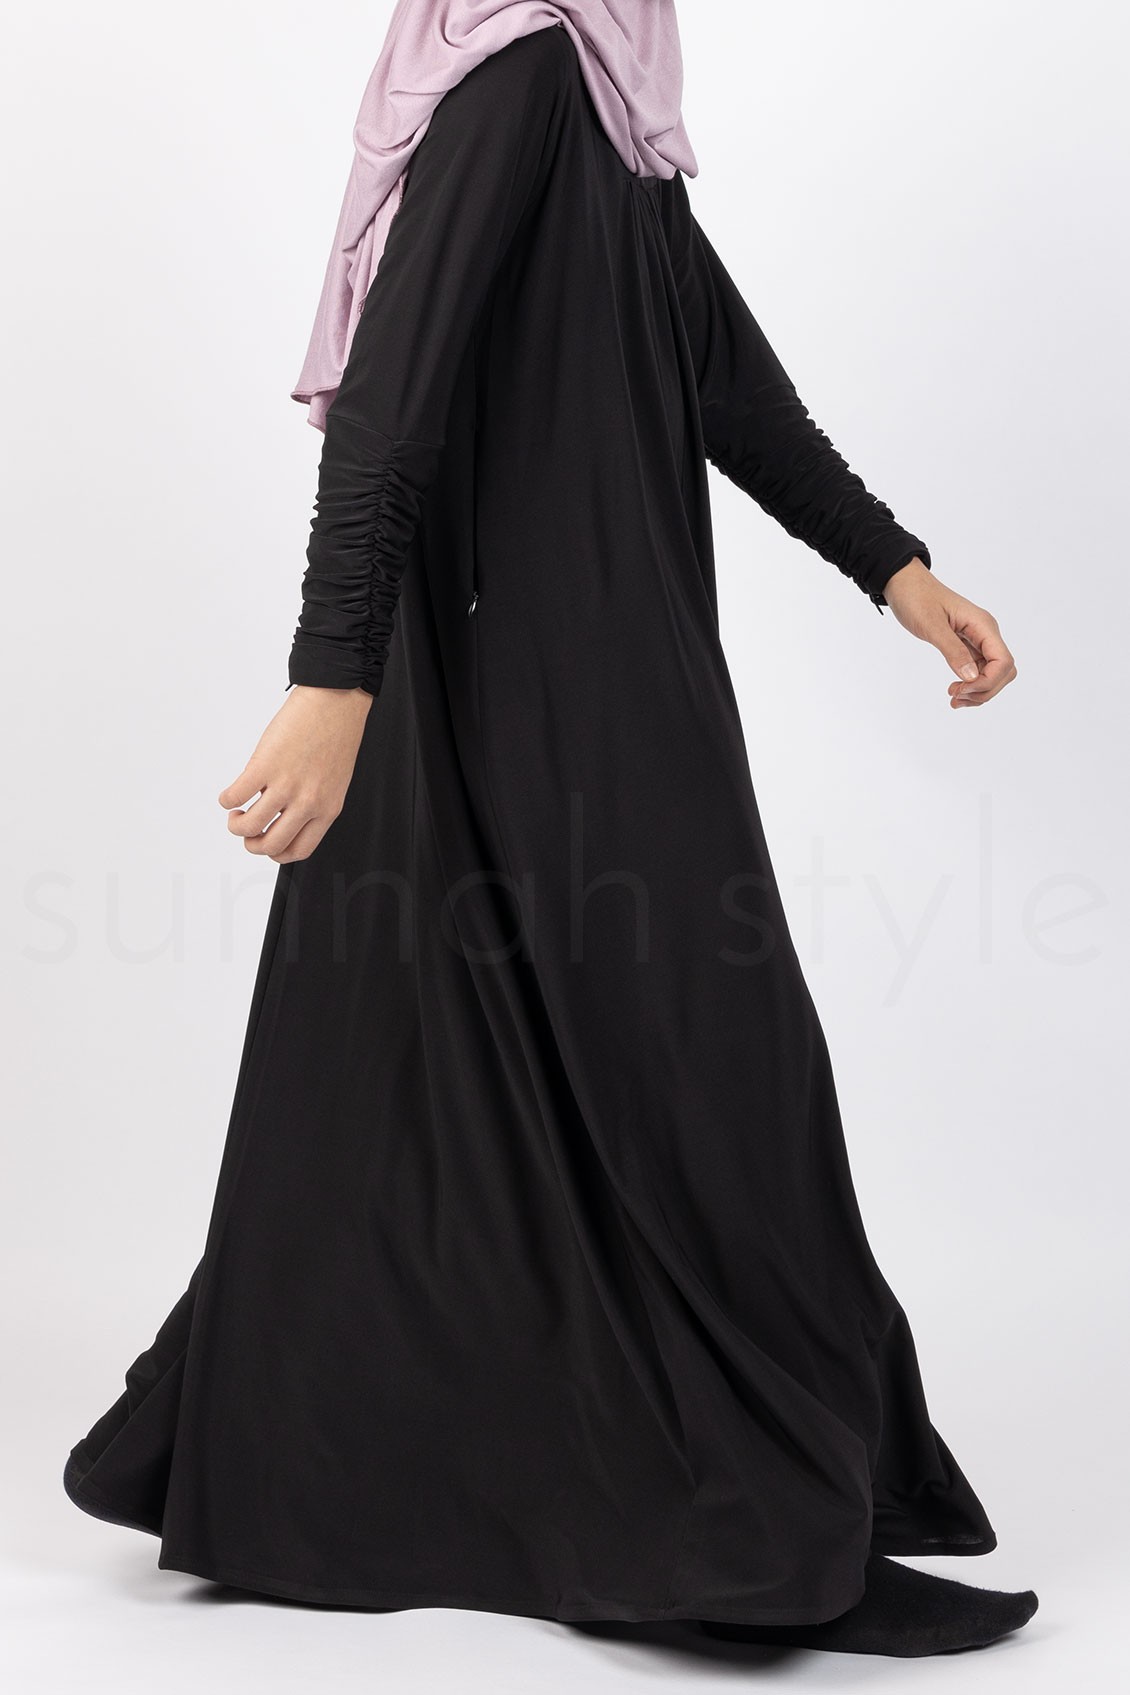 Sunnah Style Girls Flourish Jersey Abaya Black